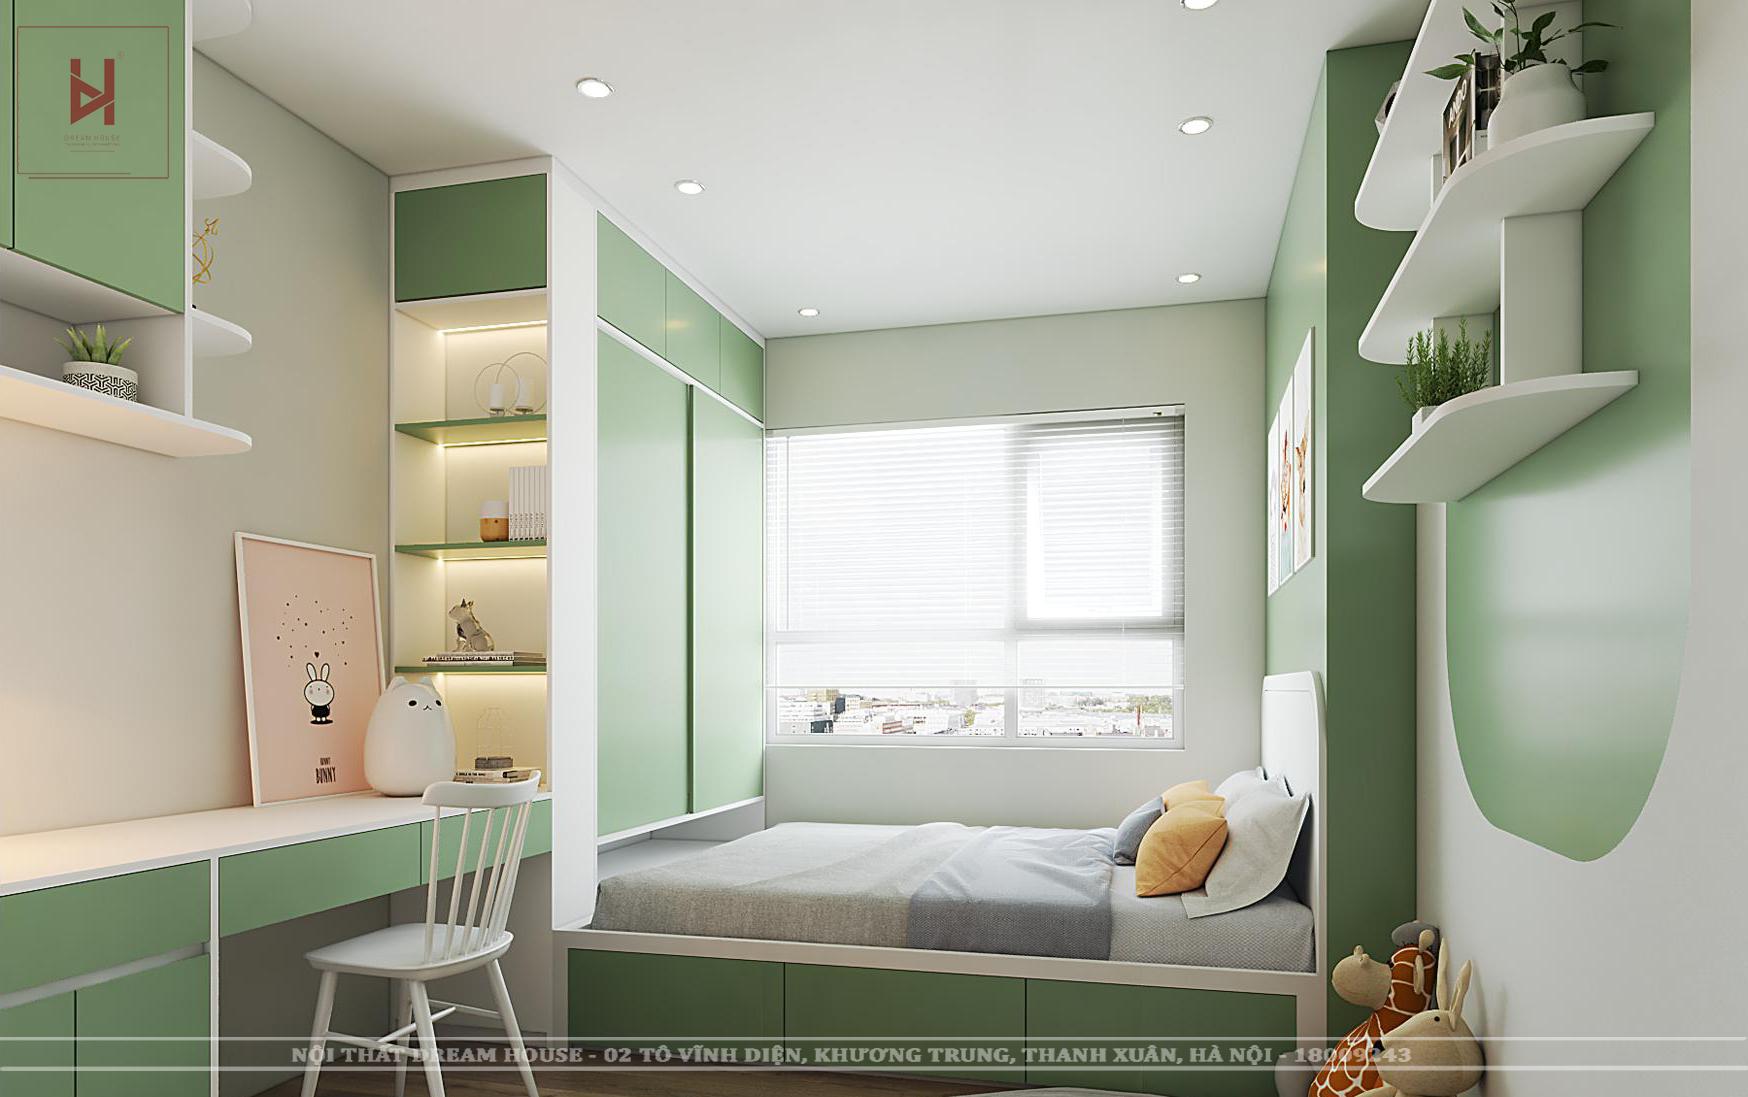 Thiết kế phòng ngủ màu xanh lá cây hiện đại cho bé sẽ giúp trẻ năng động và sáng tạo hơn. Trong khi tạo ra một môi trường thân thiện với môi trường cho con trở nên tốt hơn thì phòng sẽ tràn đầy năng lượng và cảm giác tươi mới. Xem hình ảnh để tìm hiểu thêm về thiết kế phòng ngủ cho bé độc đáo và hiện đại.